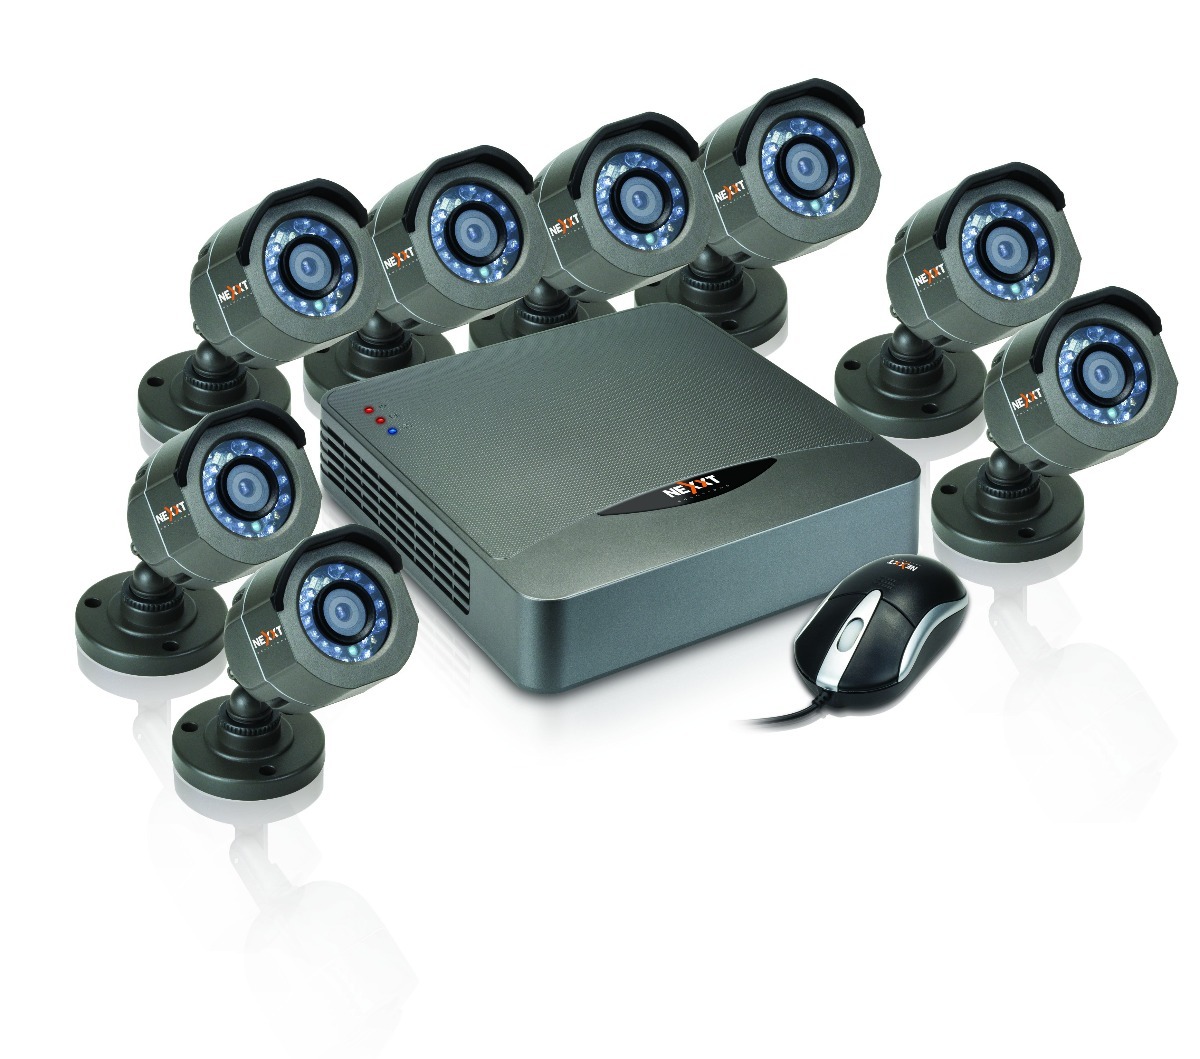 Регистратор на 8 камер. Корейский регистратор для видеонаблюдения AHD-2016. AFX-HVR 0801. Готовые комплекты видеонаблюдения. Комплект видеонаблюдения AHD.